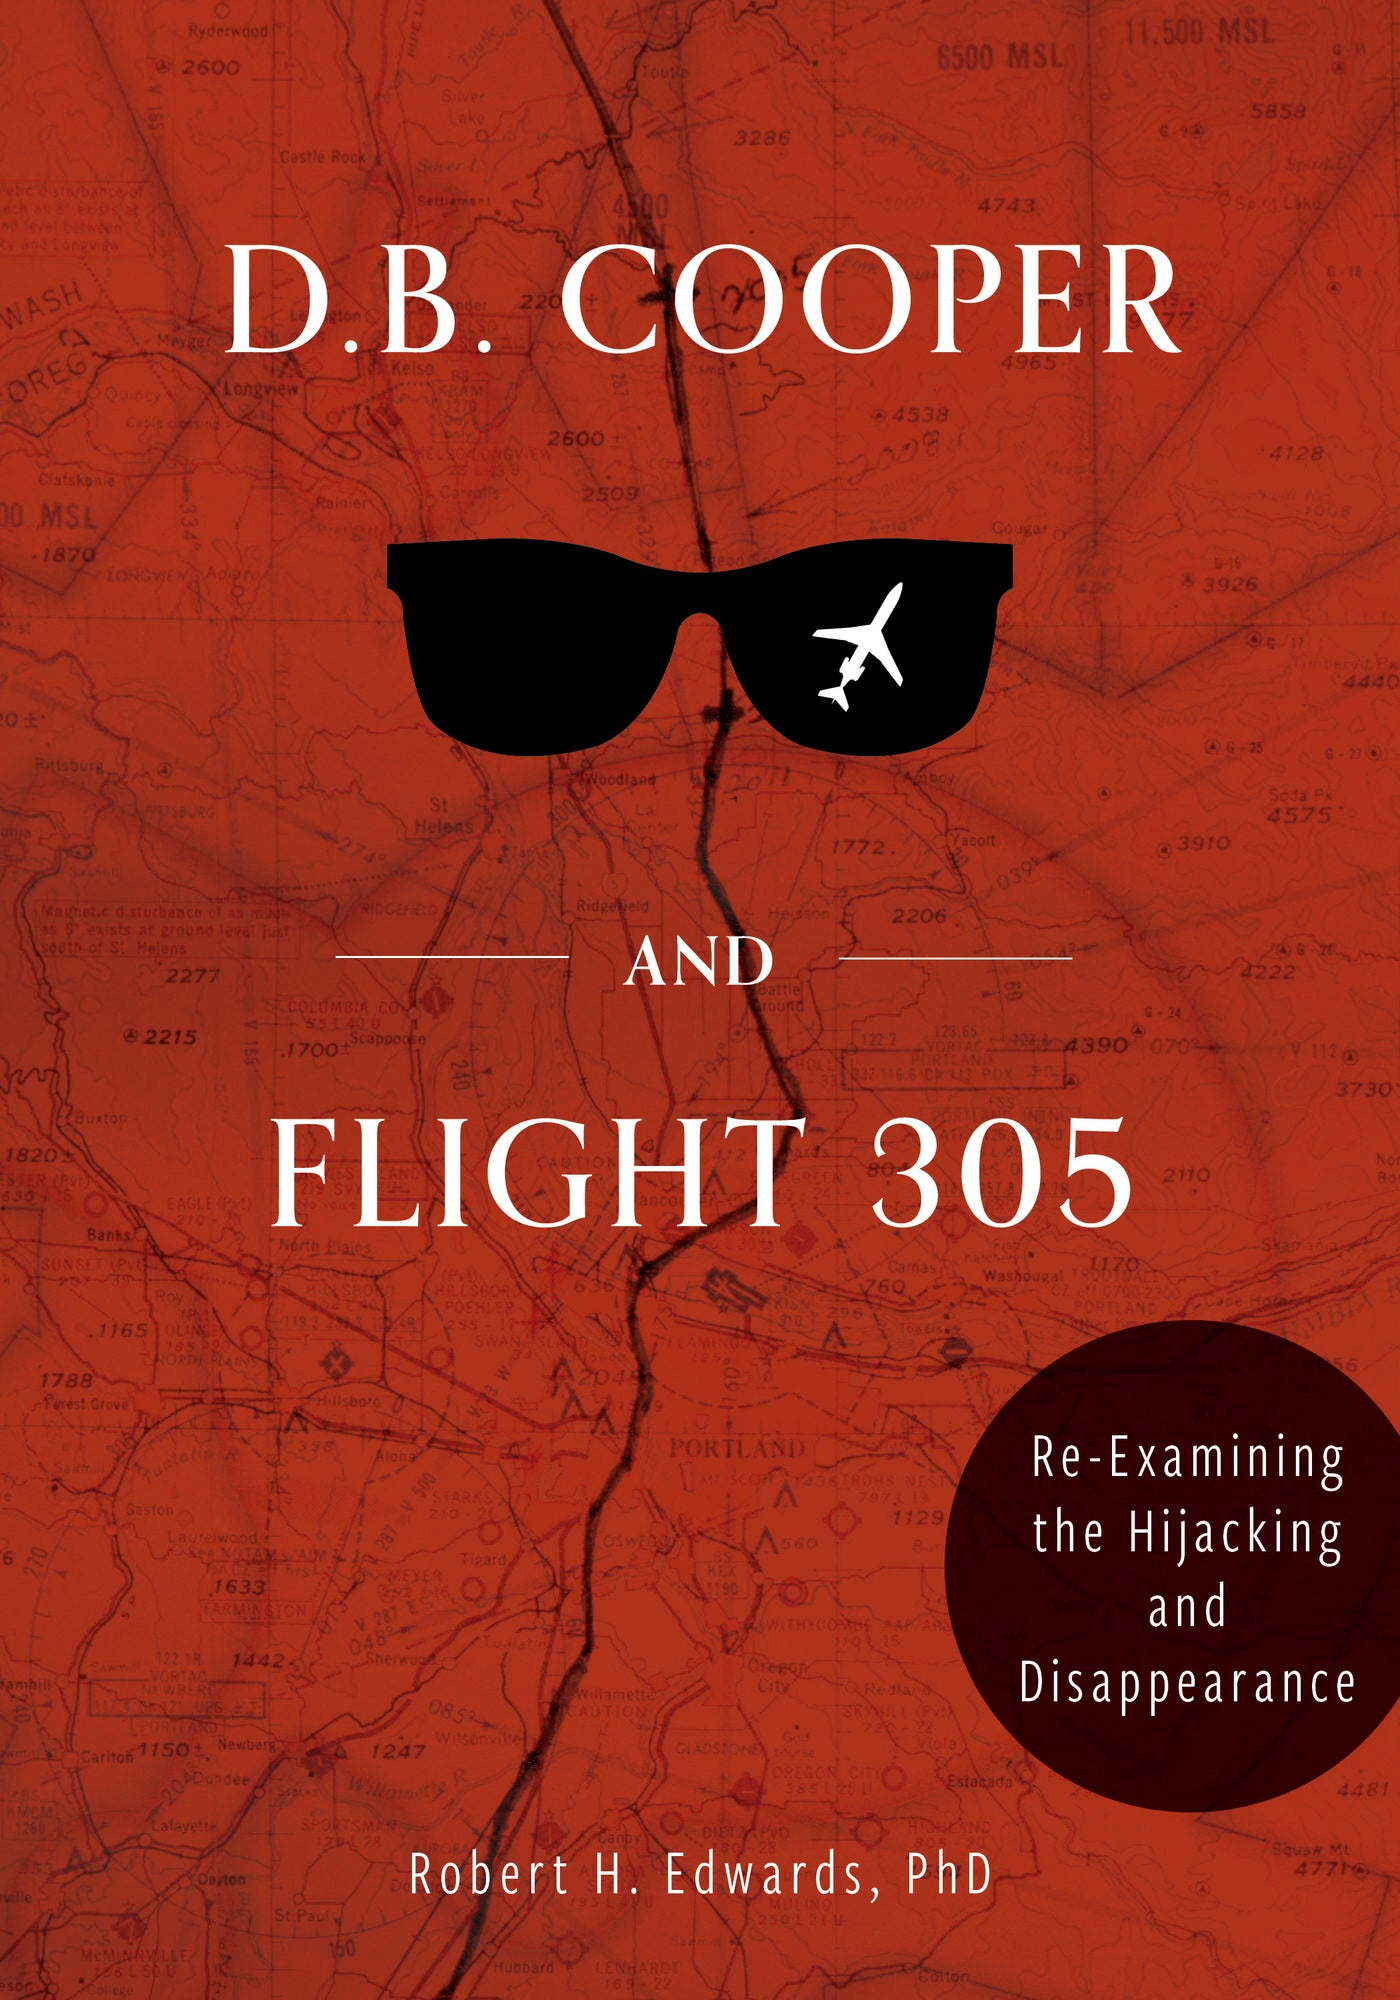 D. B. Cooper and Flight 305